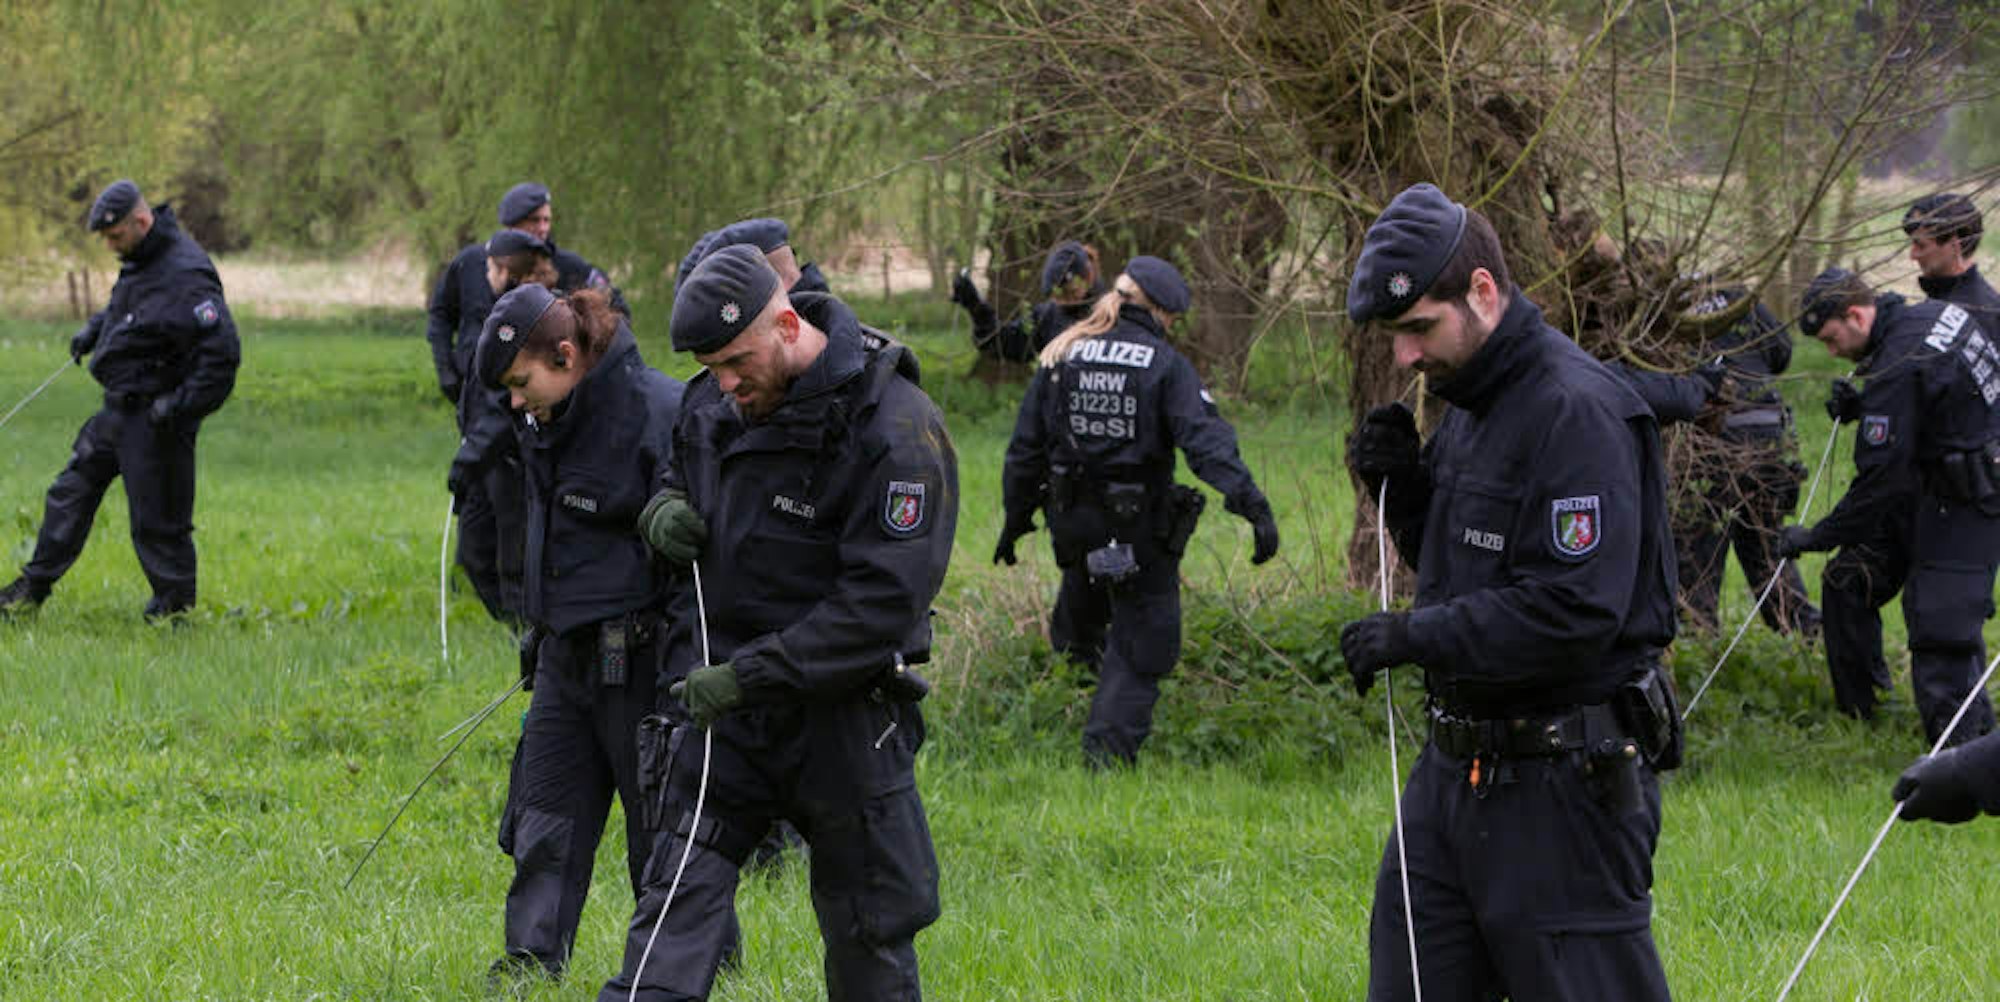 Polizisten durchkämmen das Gebiet in der Siegaue, in dem eine Frau vergewaltigt wurde.